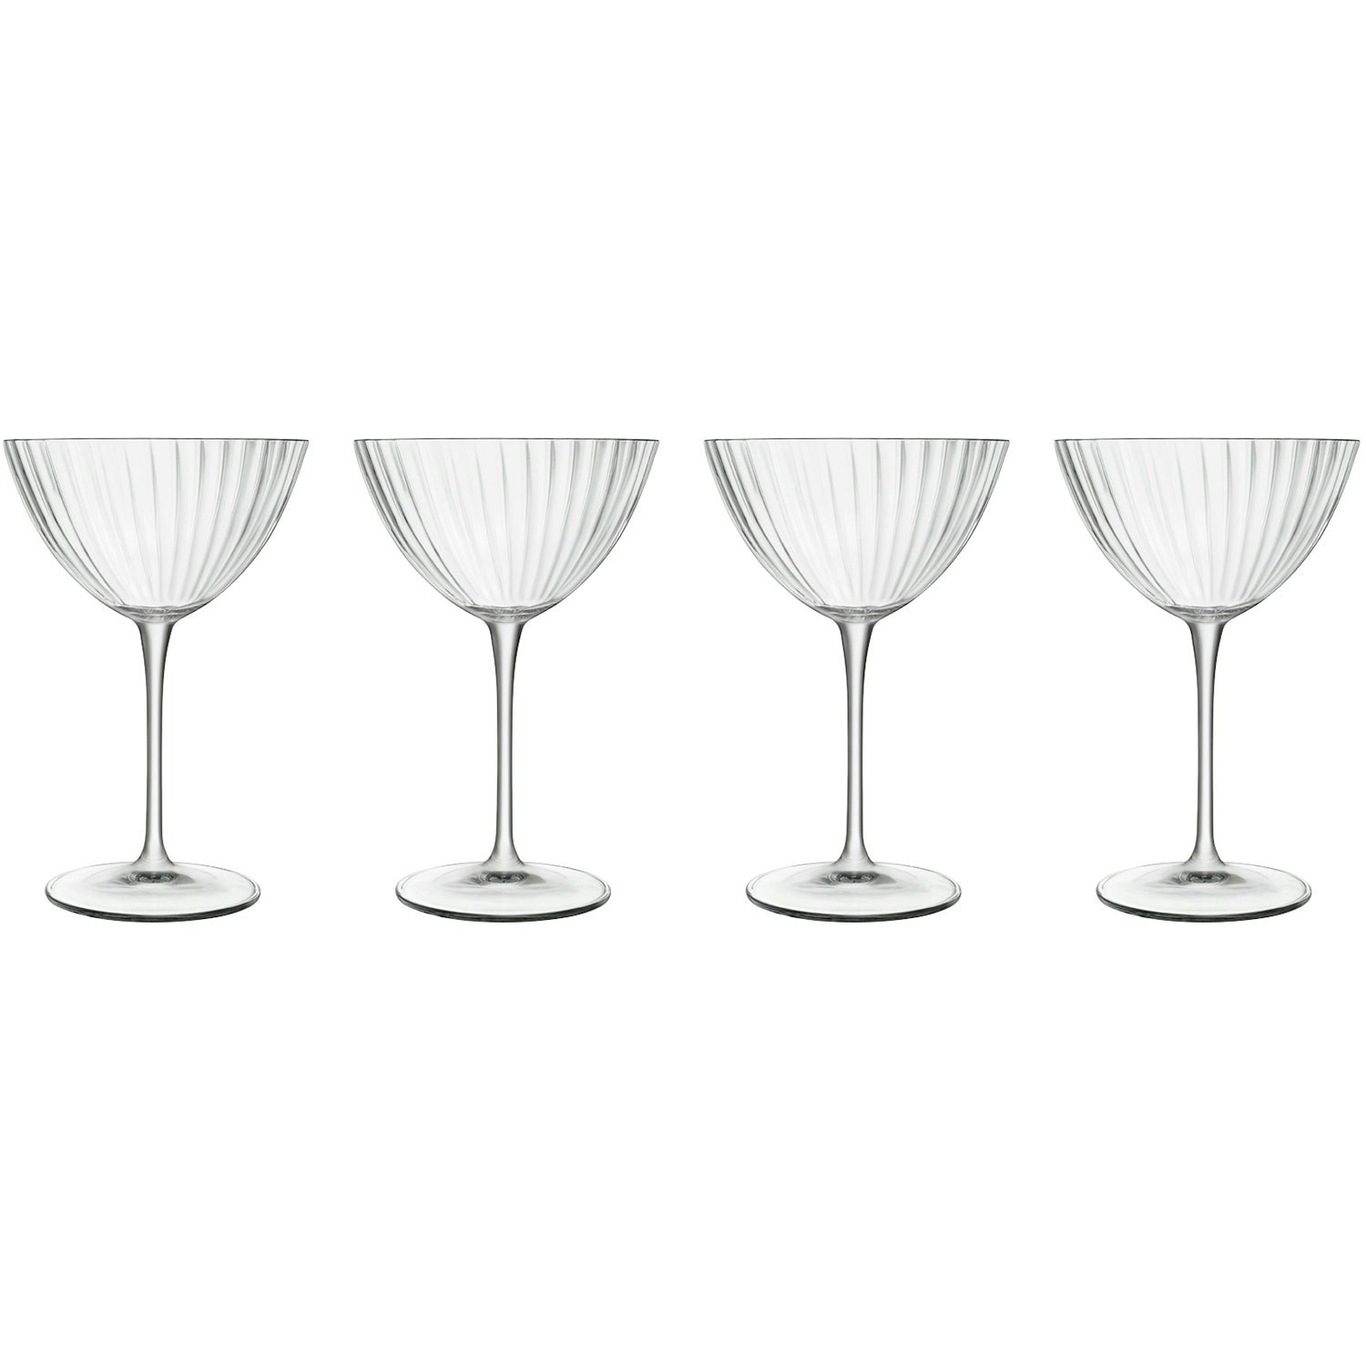 https://royaldesign.com/image/2/luigi-bormioli-martiniglass-optica-22-cl-4-pcs-1?w=800&quality=80